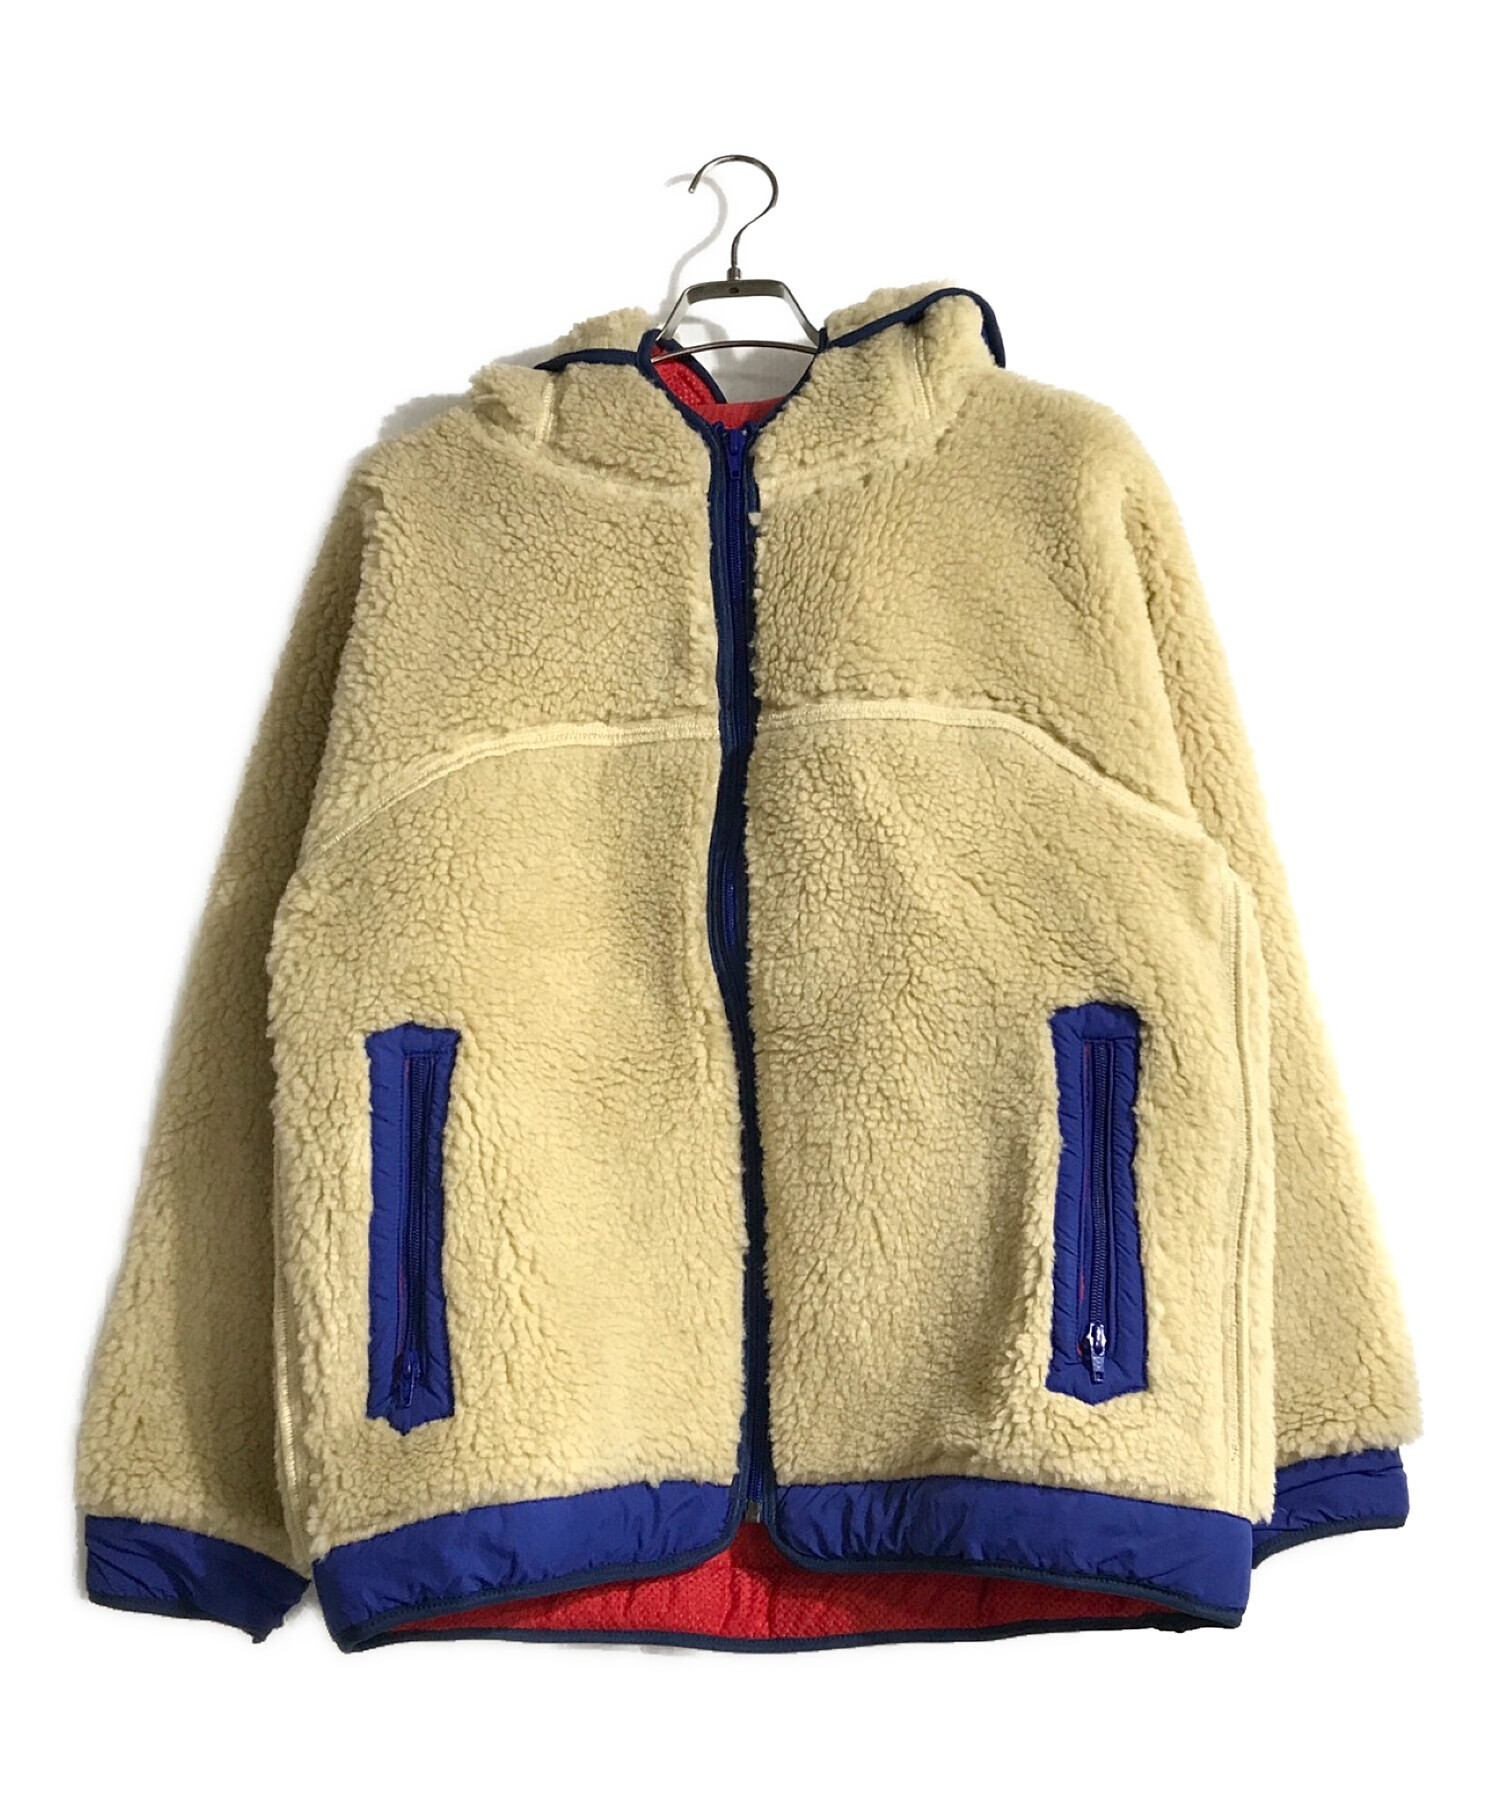 comfy outdoor garment rabbit hoodie